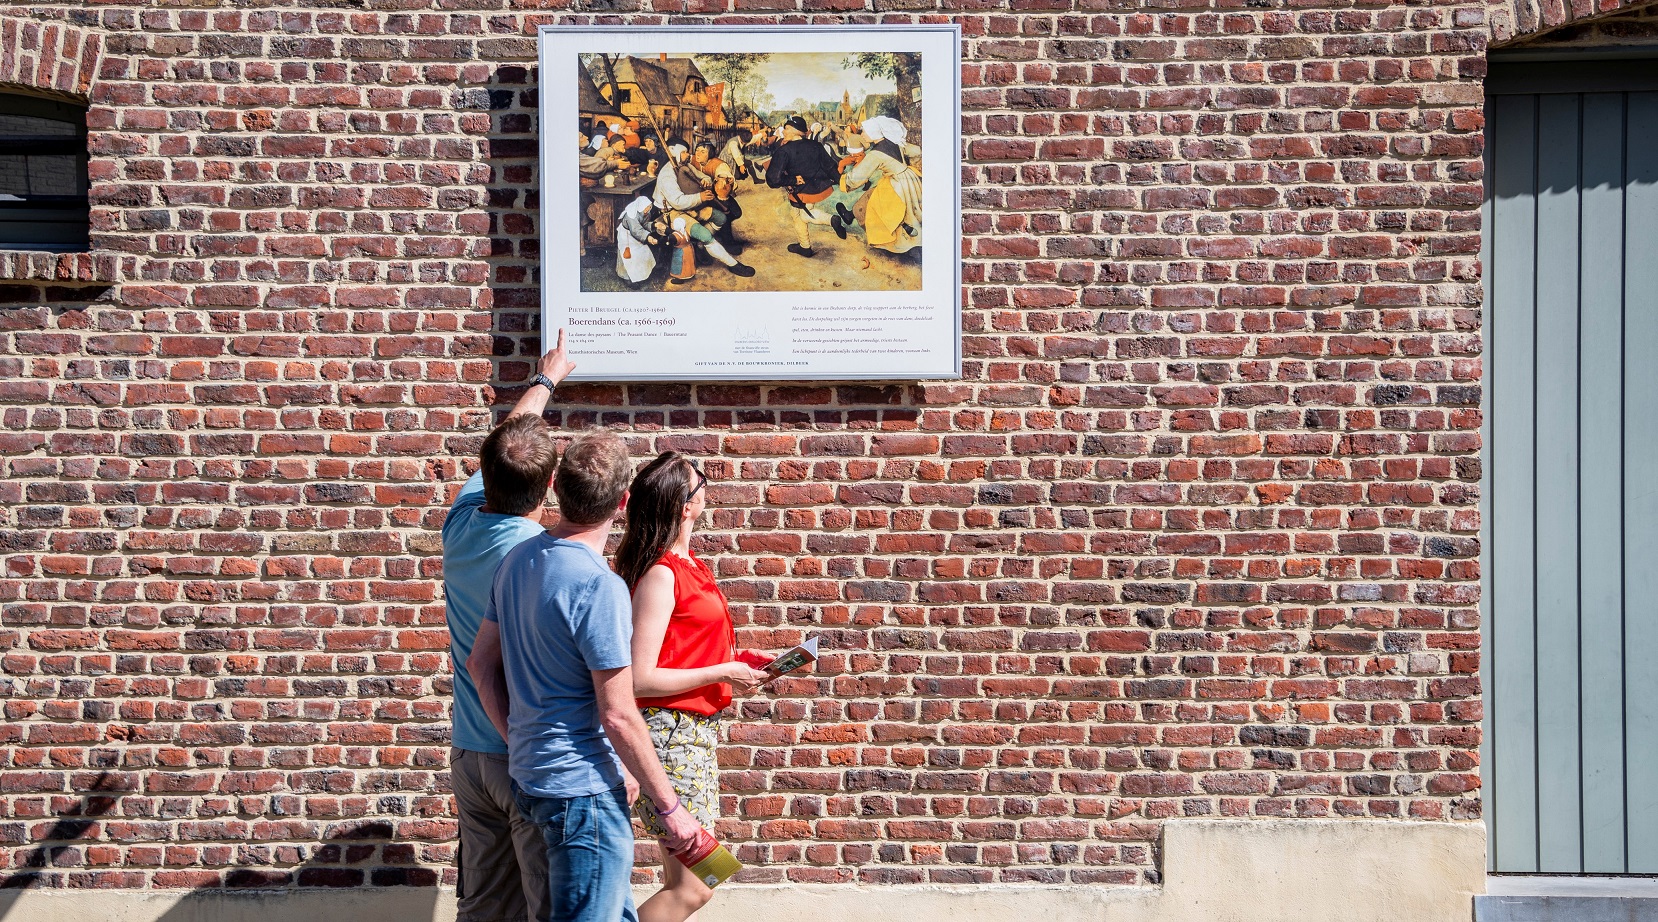 Bruegel open-air museum